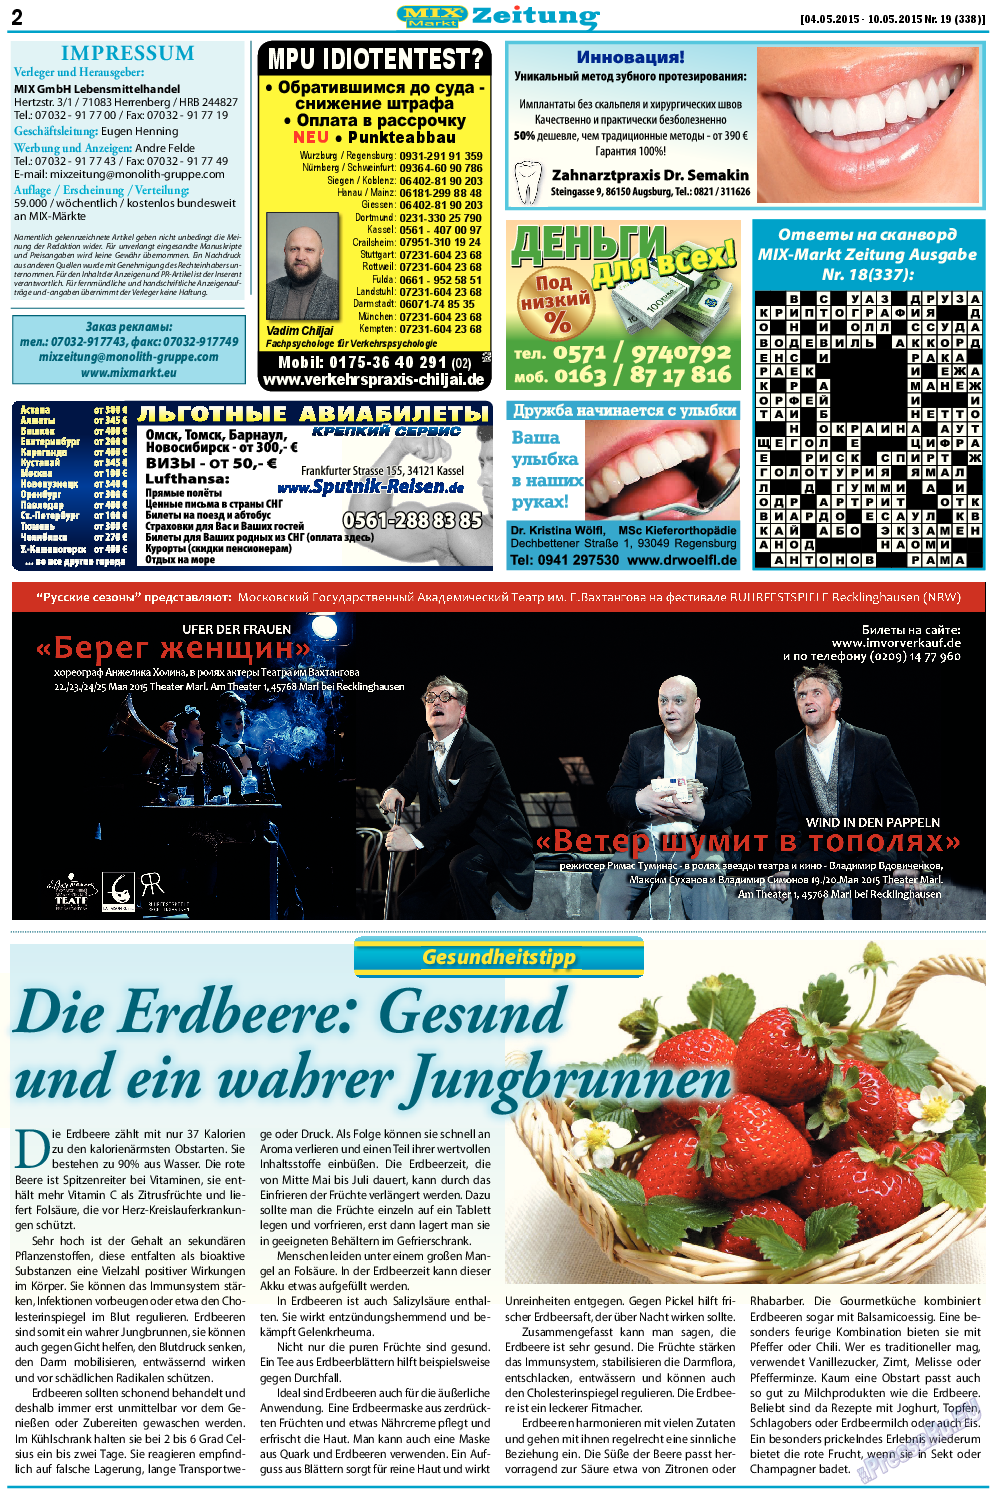 MIX-Markt Zeitung (газета). 2015 год, номер 19, стр. 2